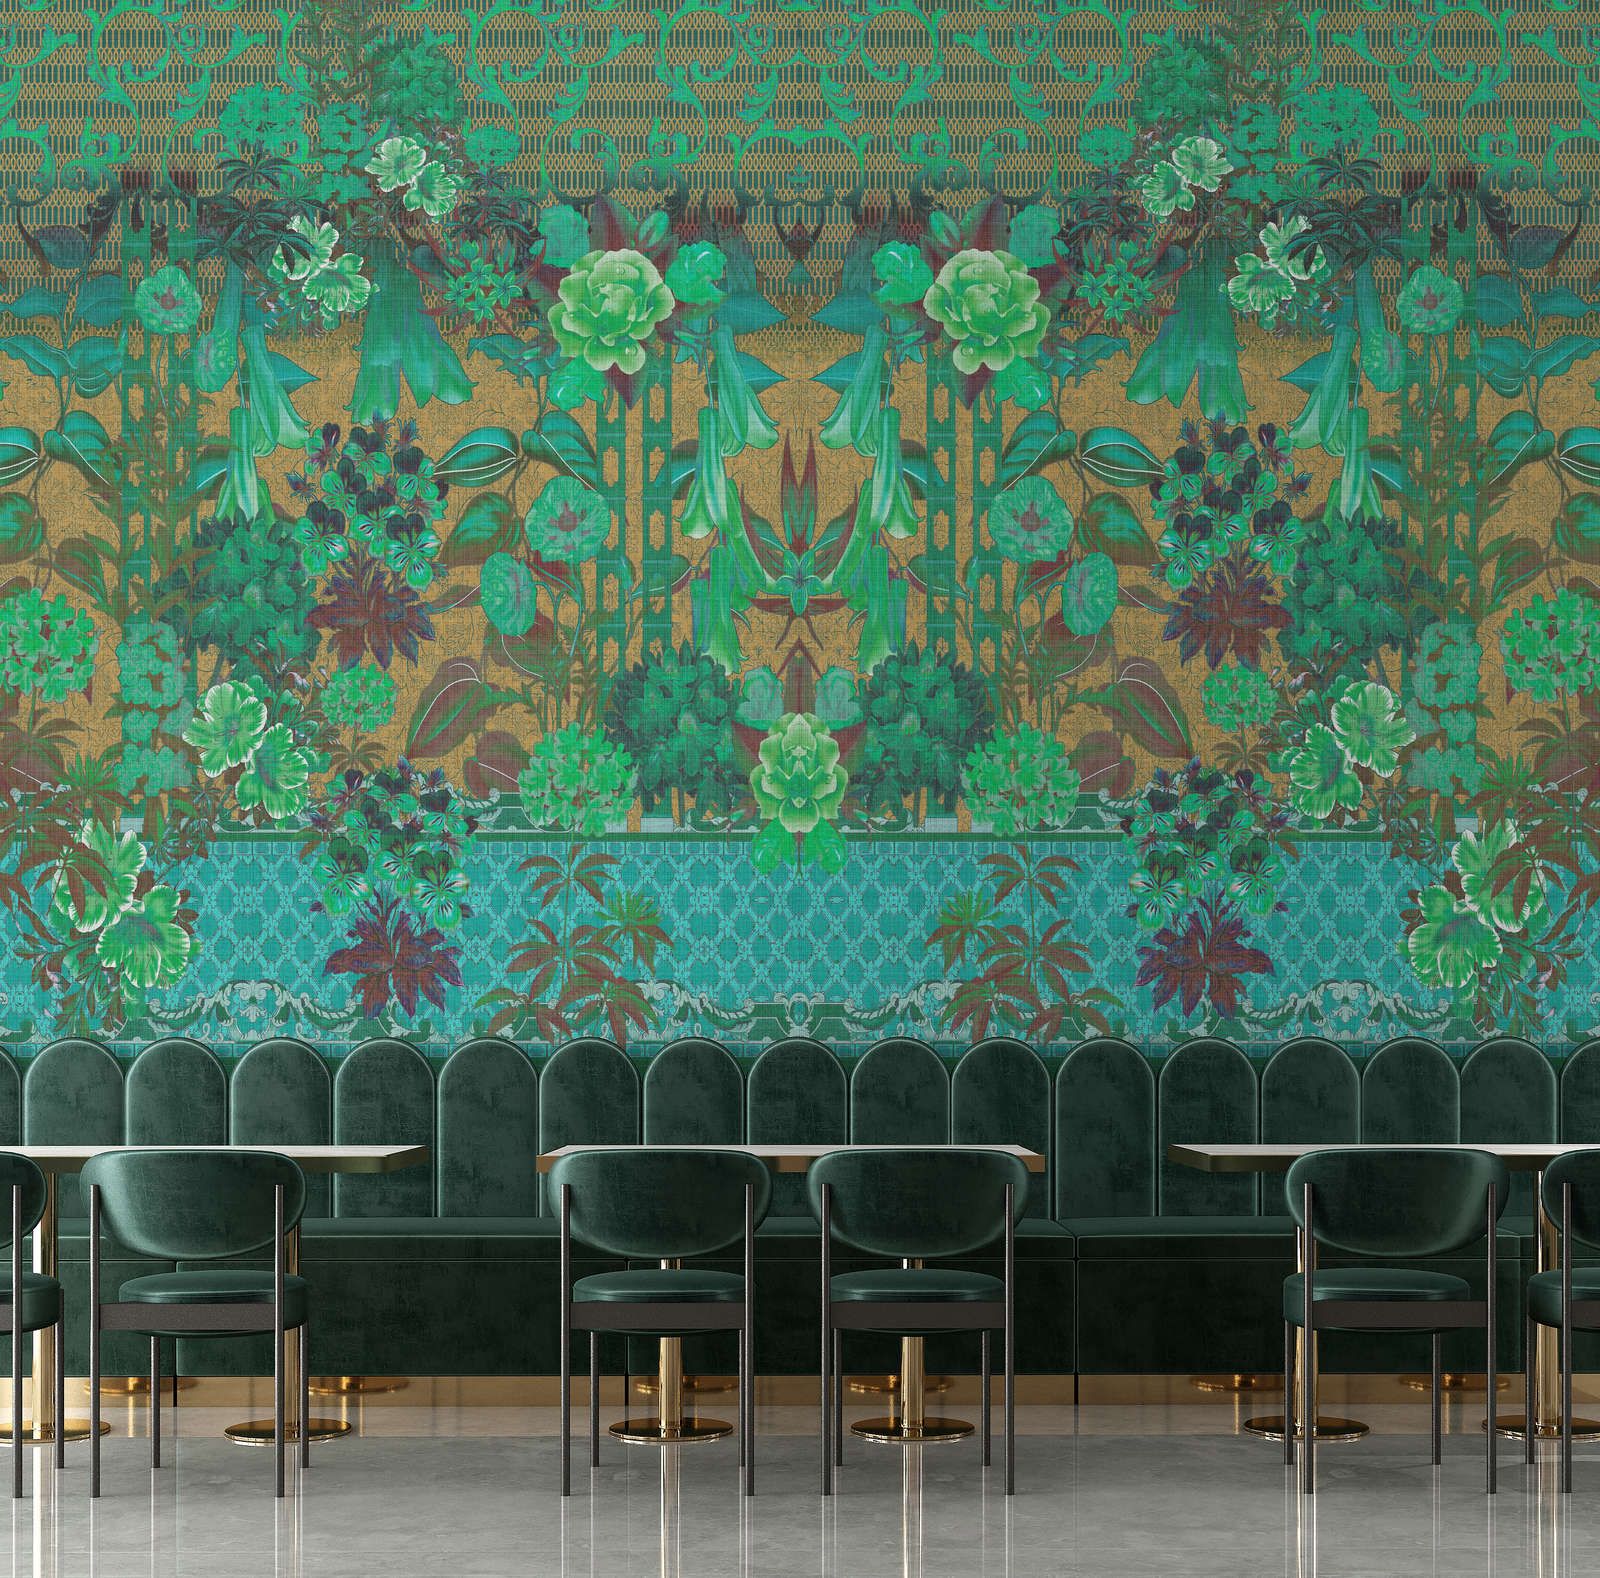             Fotomural »sati 2« - Diseño floral y ornamentos con aspecto de estructura de lino - Verde | Tela no tejida de alta calidad, lisa y ligeramente brillante
        